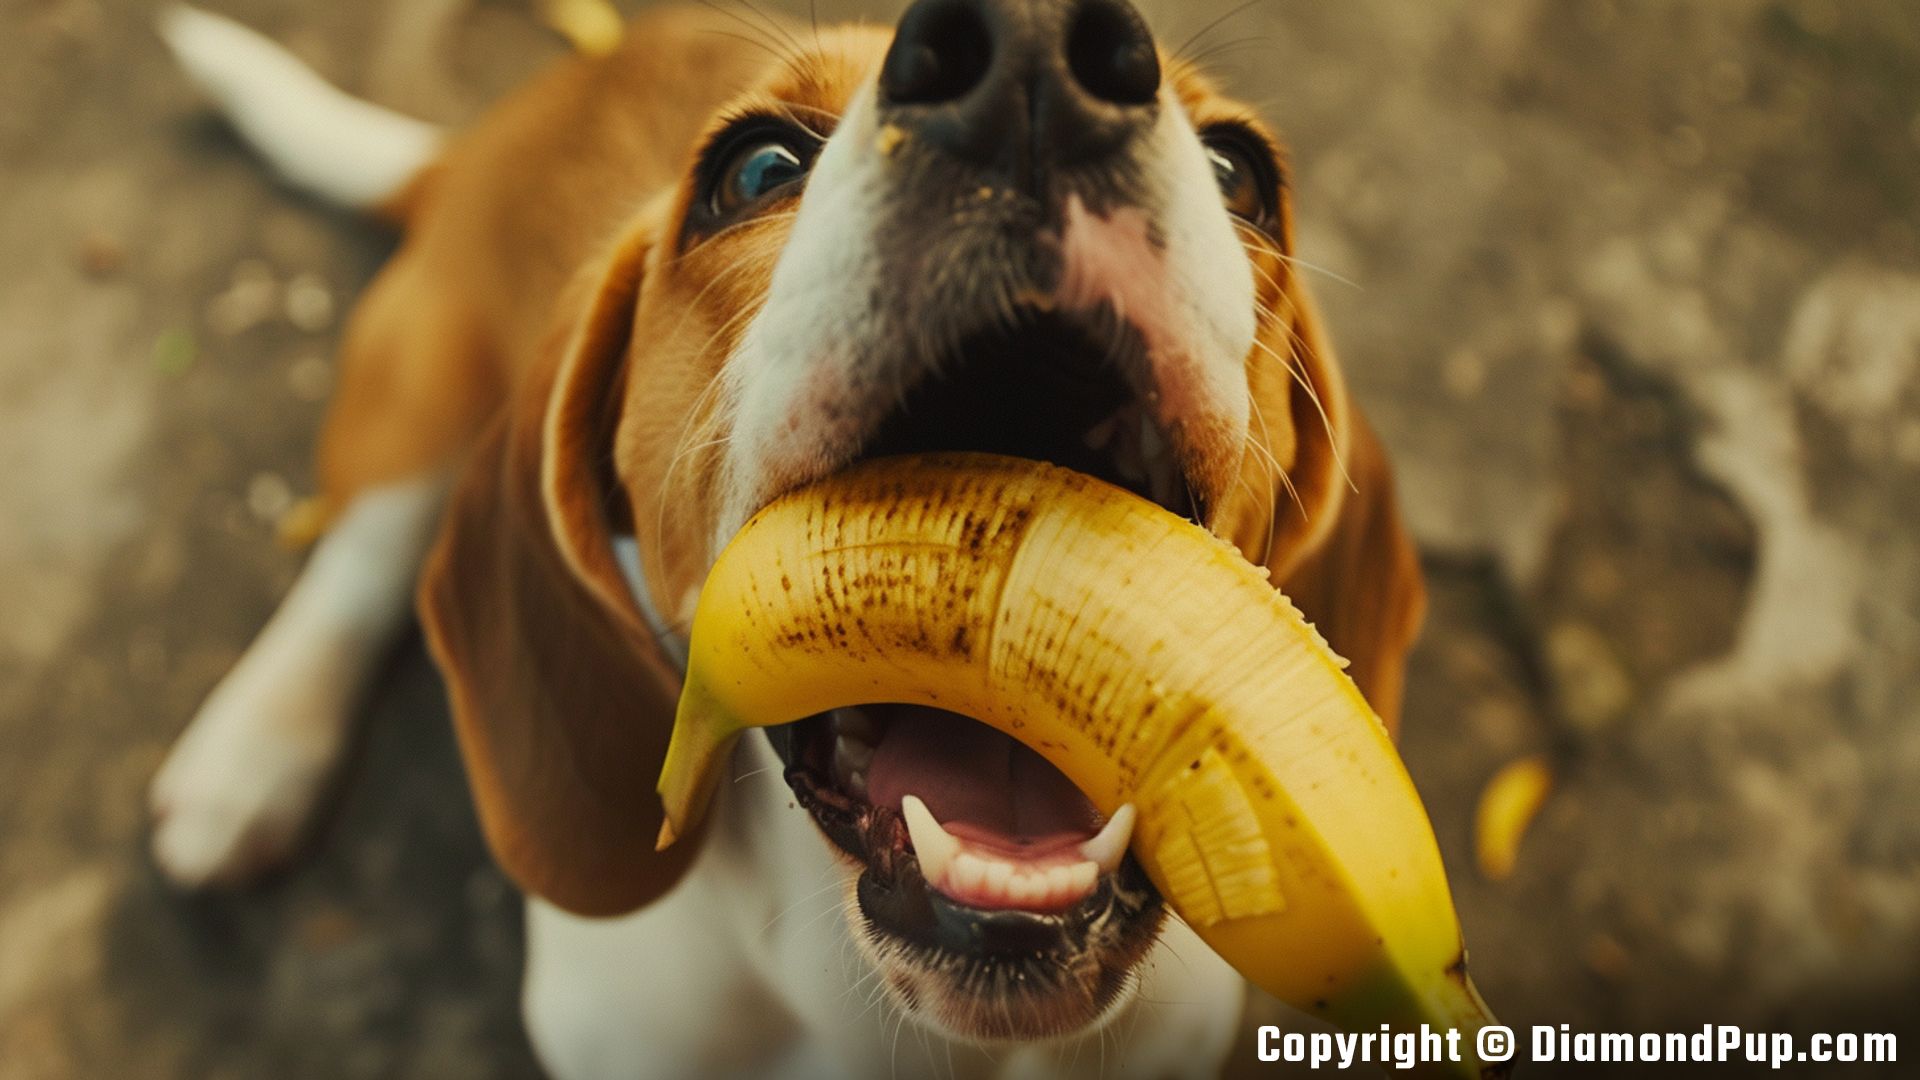 Image of an Adorable Beagle Snacking on Banana